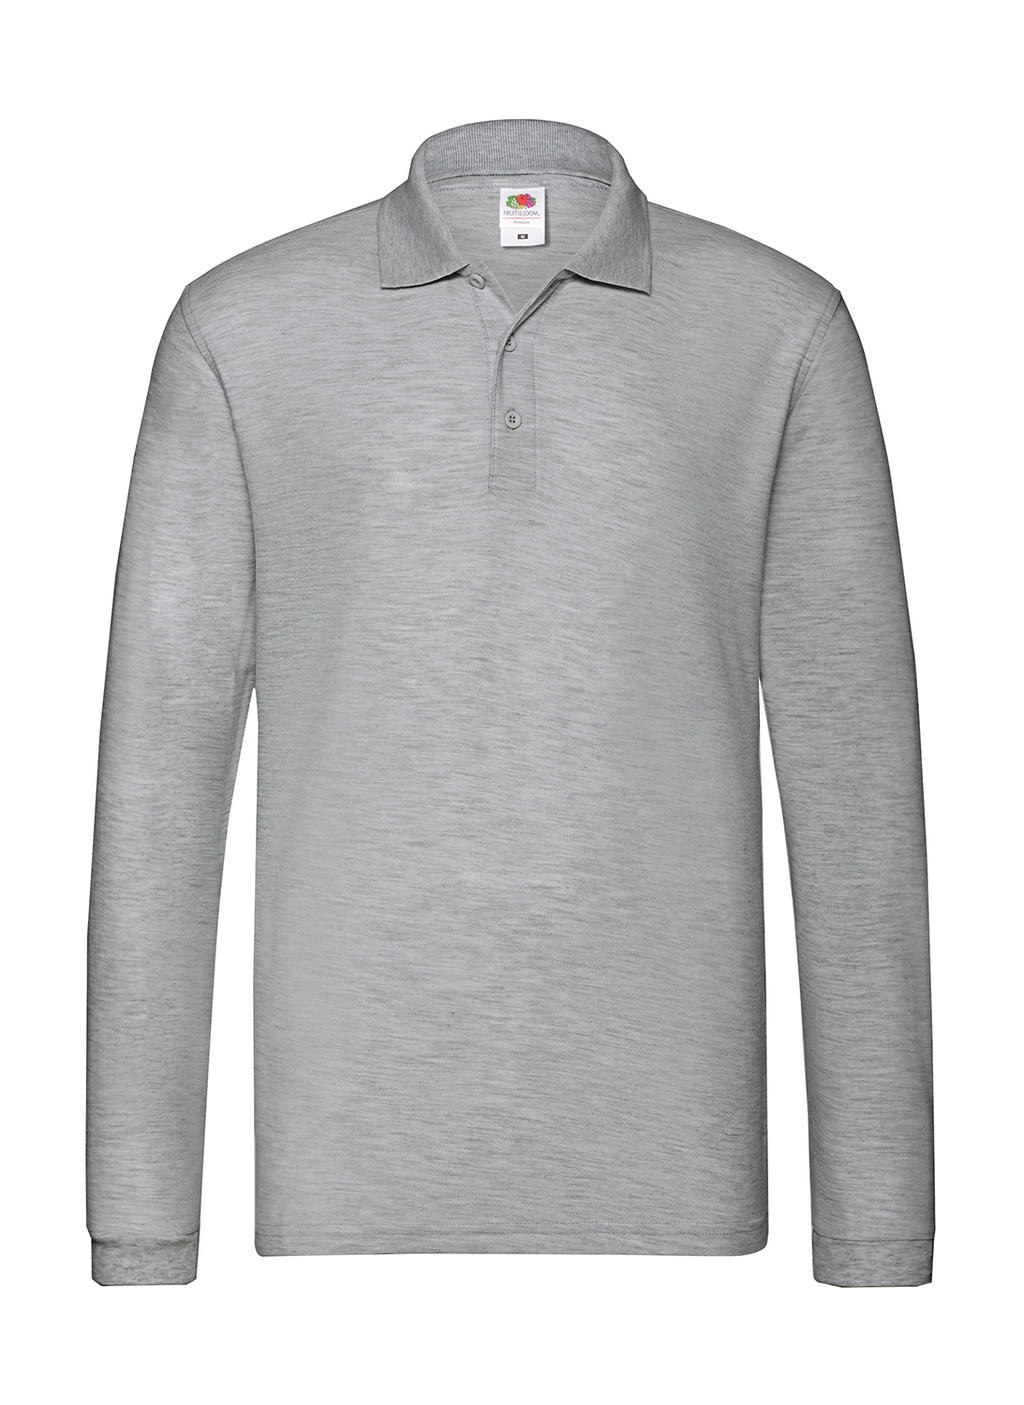 Premium Long Sleeve Polo zum Besticken und Bedrucken in der Farbe Athletic Heather mit Ihren Logo, Schriftzug oder Motiv.